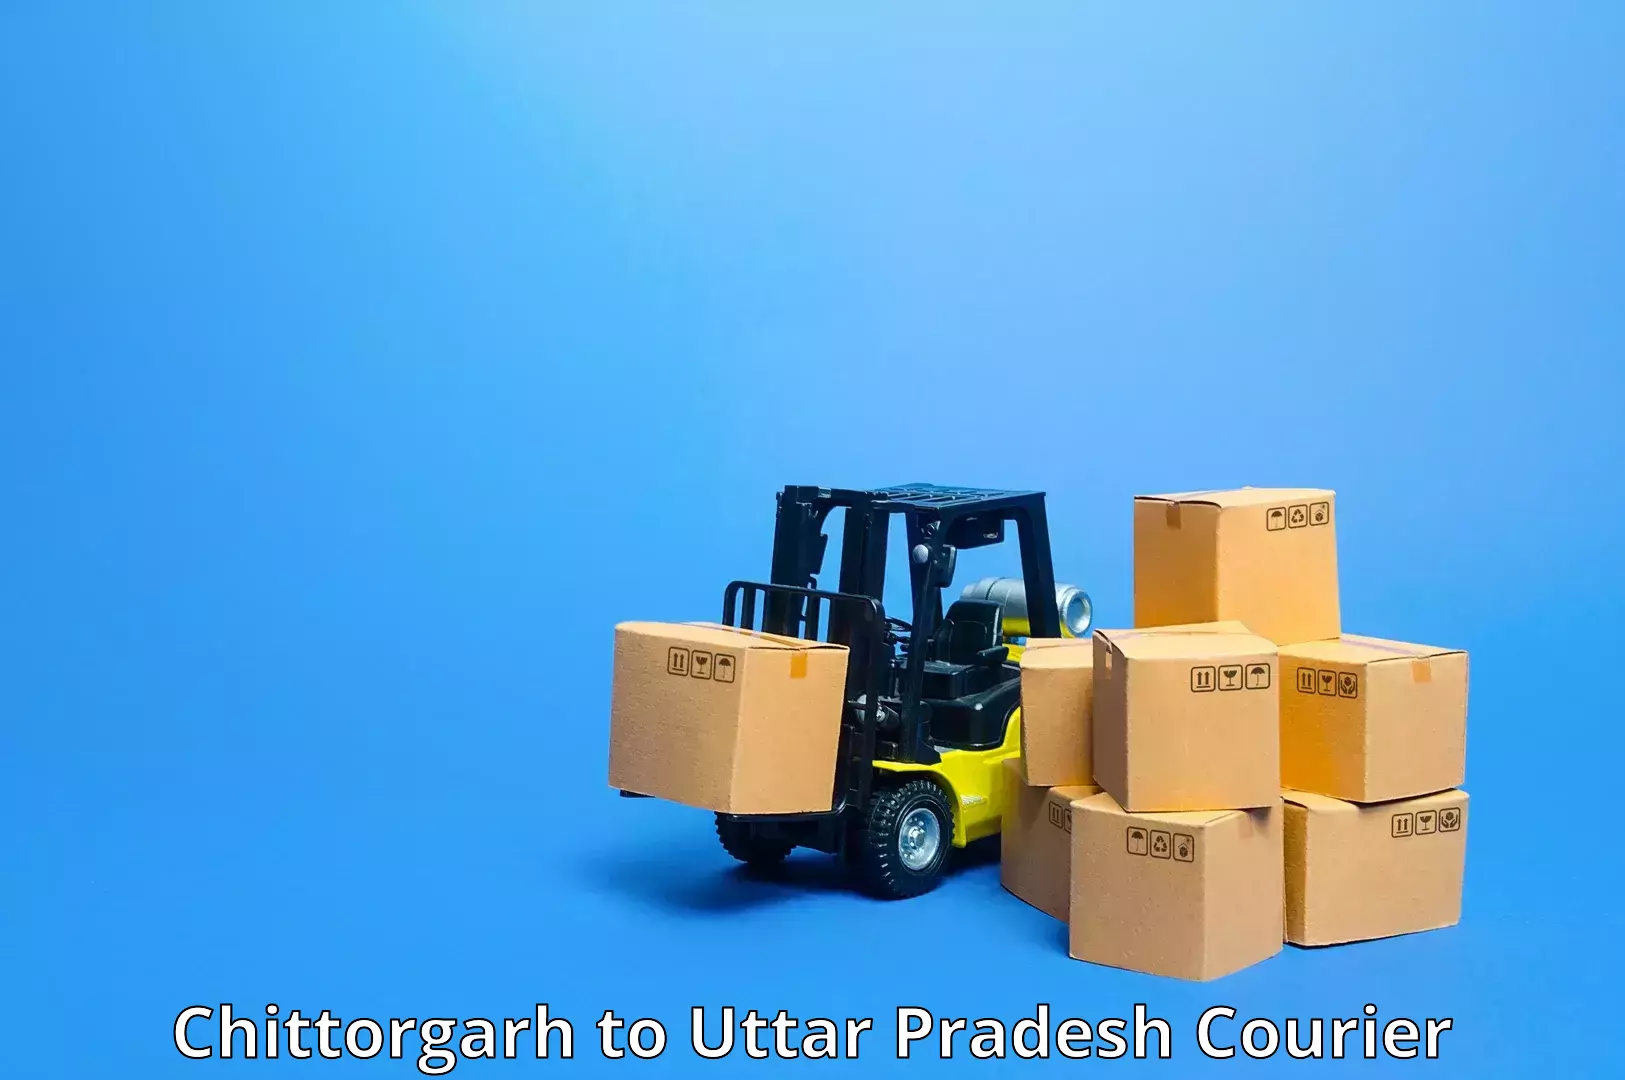 User-friendly courier app Chittorgarh to Uttar Pradesh